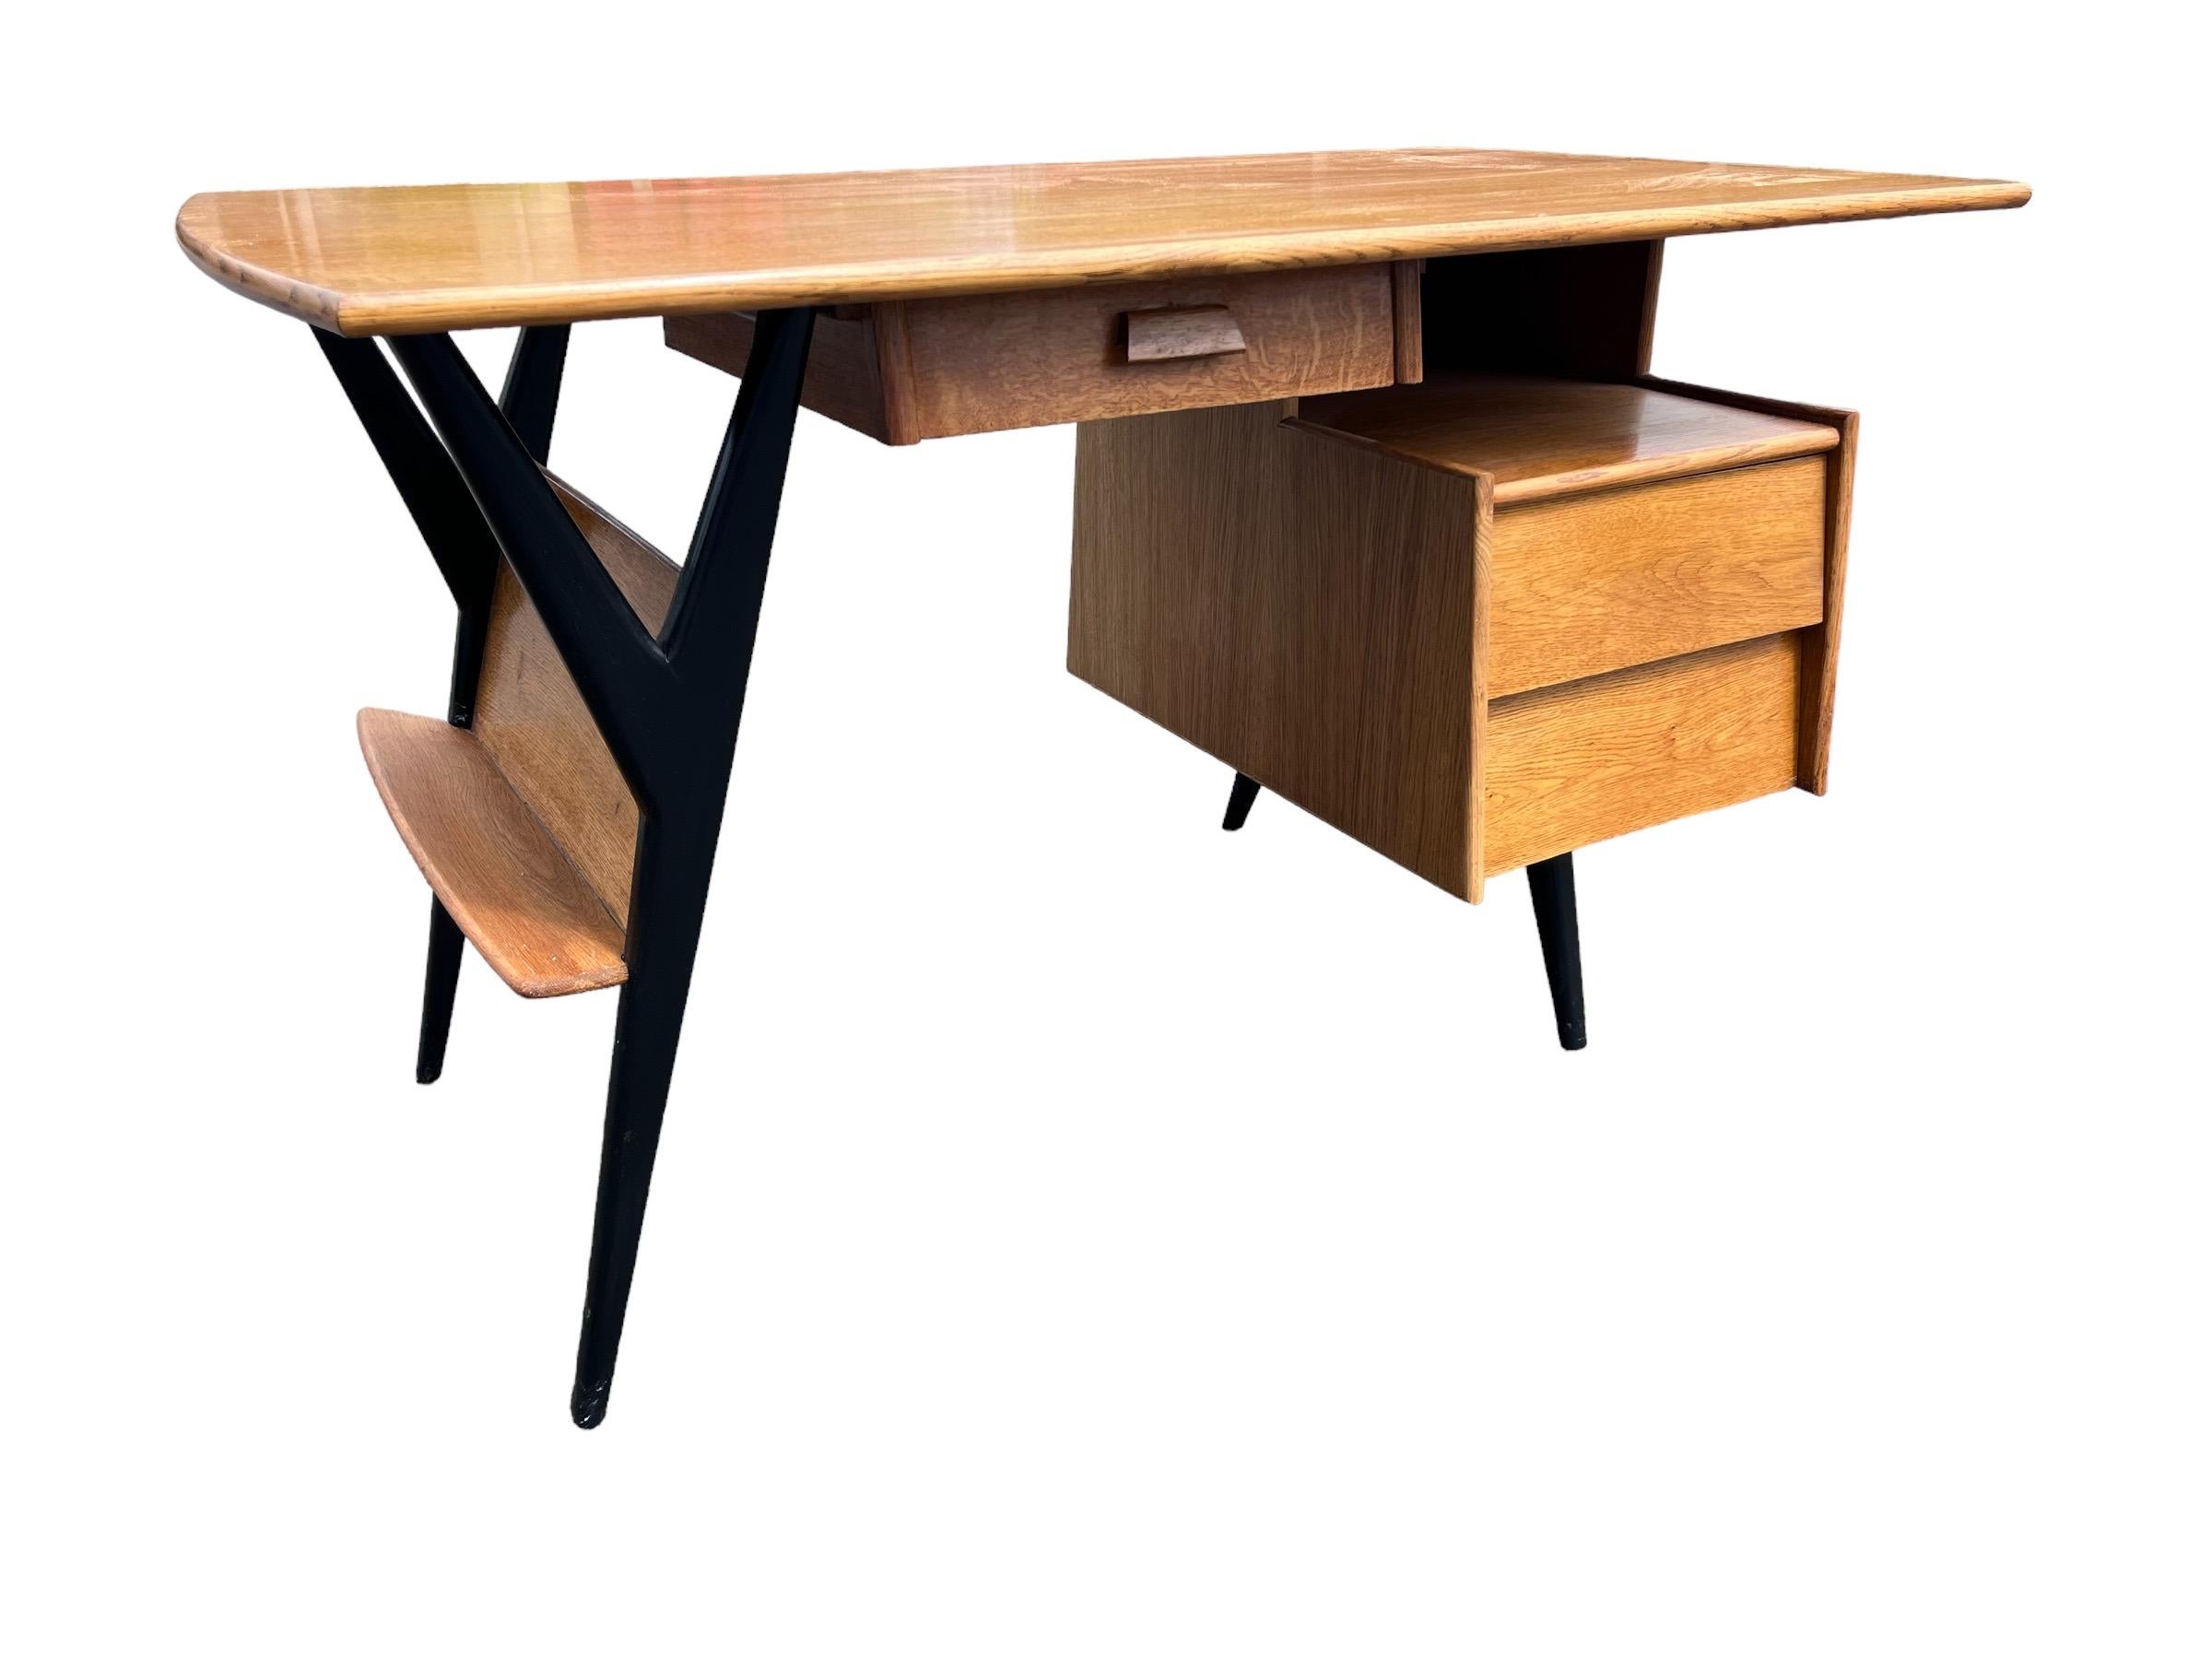 Schreibtisch aus Eichenholz aus den 1950er Jahren, entworfen von Louis Paolozzi, herausgegeben von Guermonprez.
